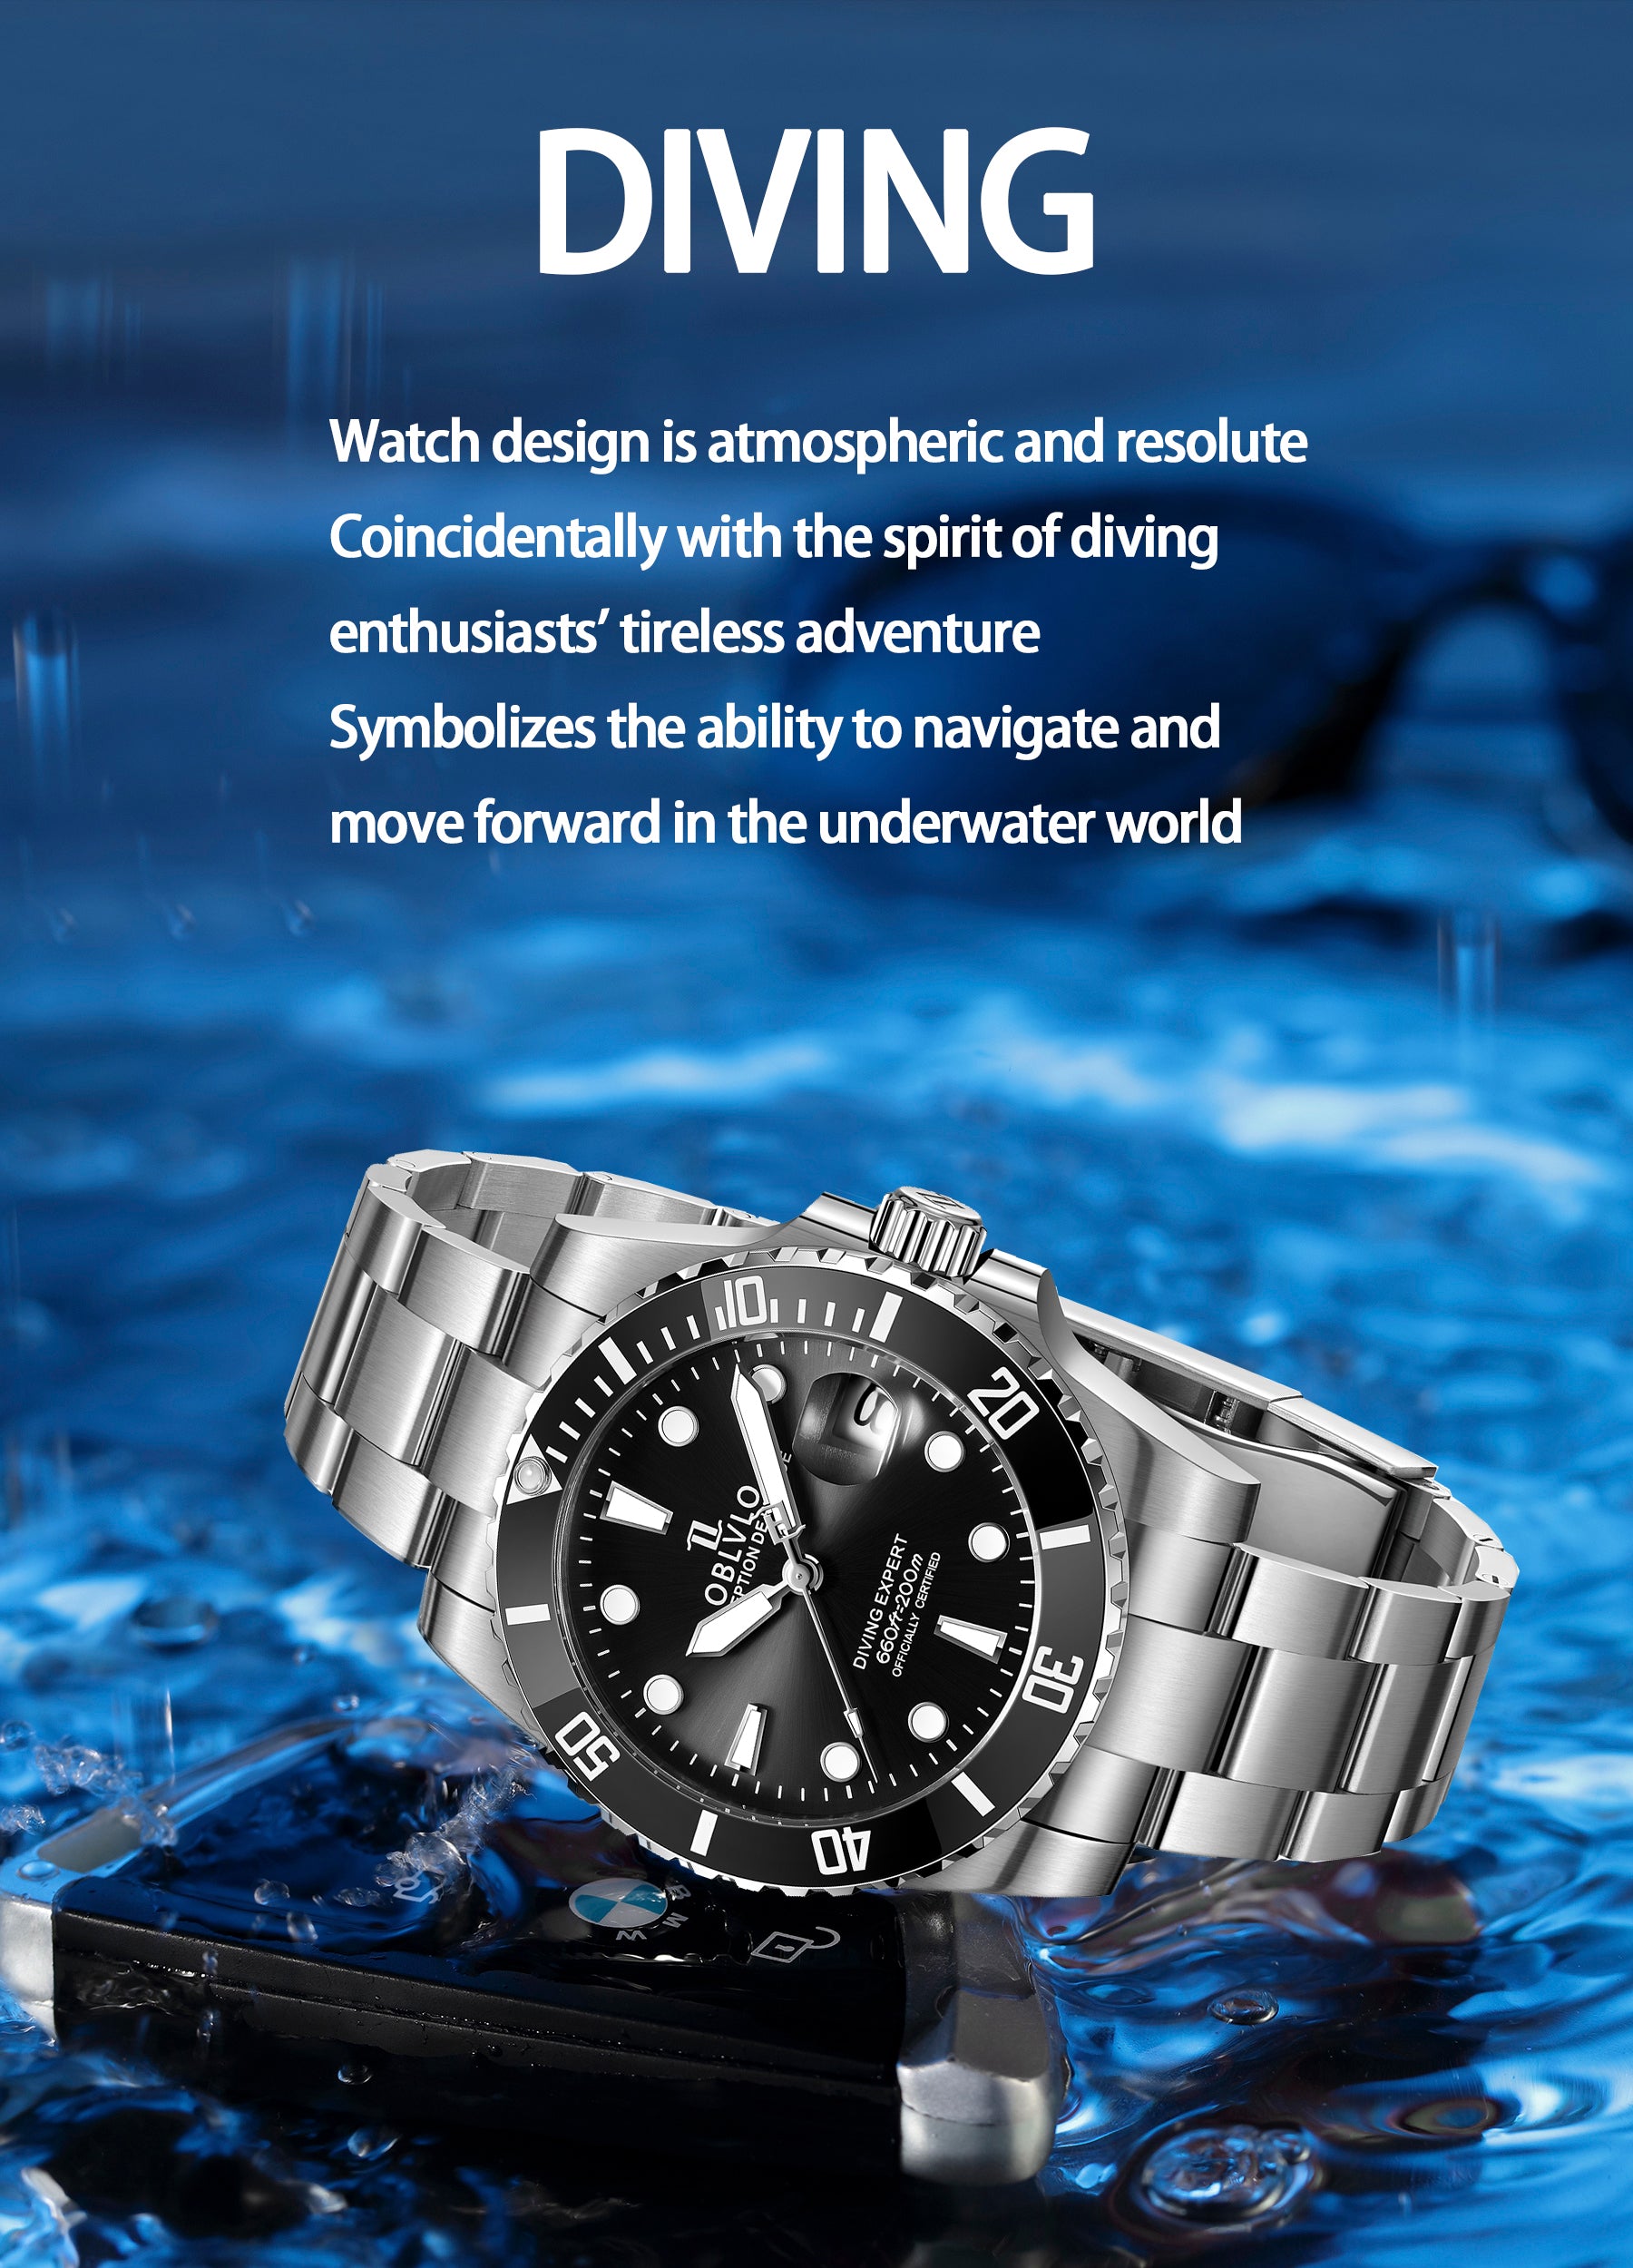 Luxury Classic Automatic Dive Dress Watch For Men -  Oblvlo Design DM-SIM